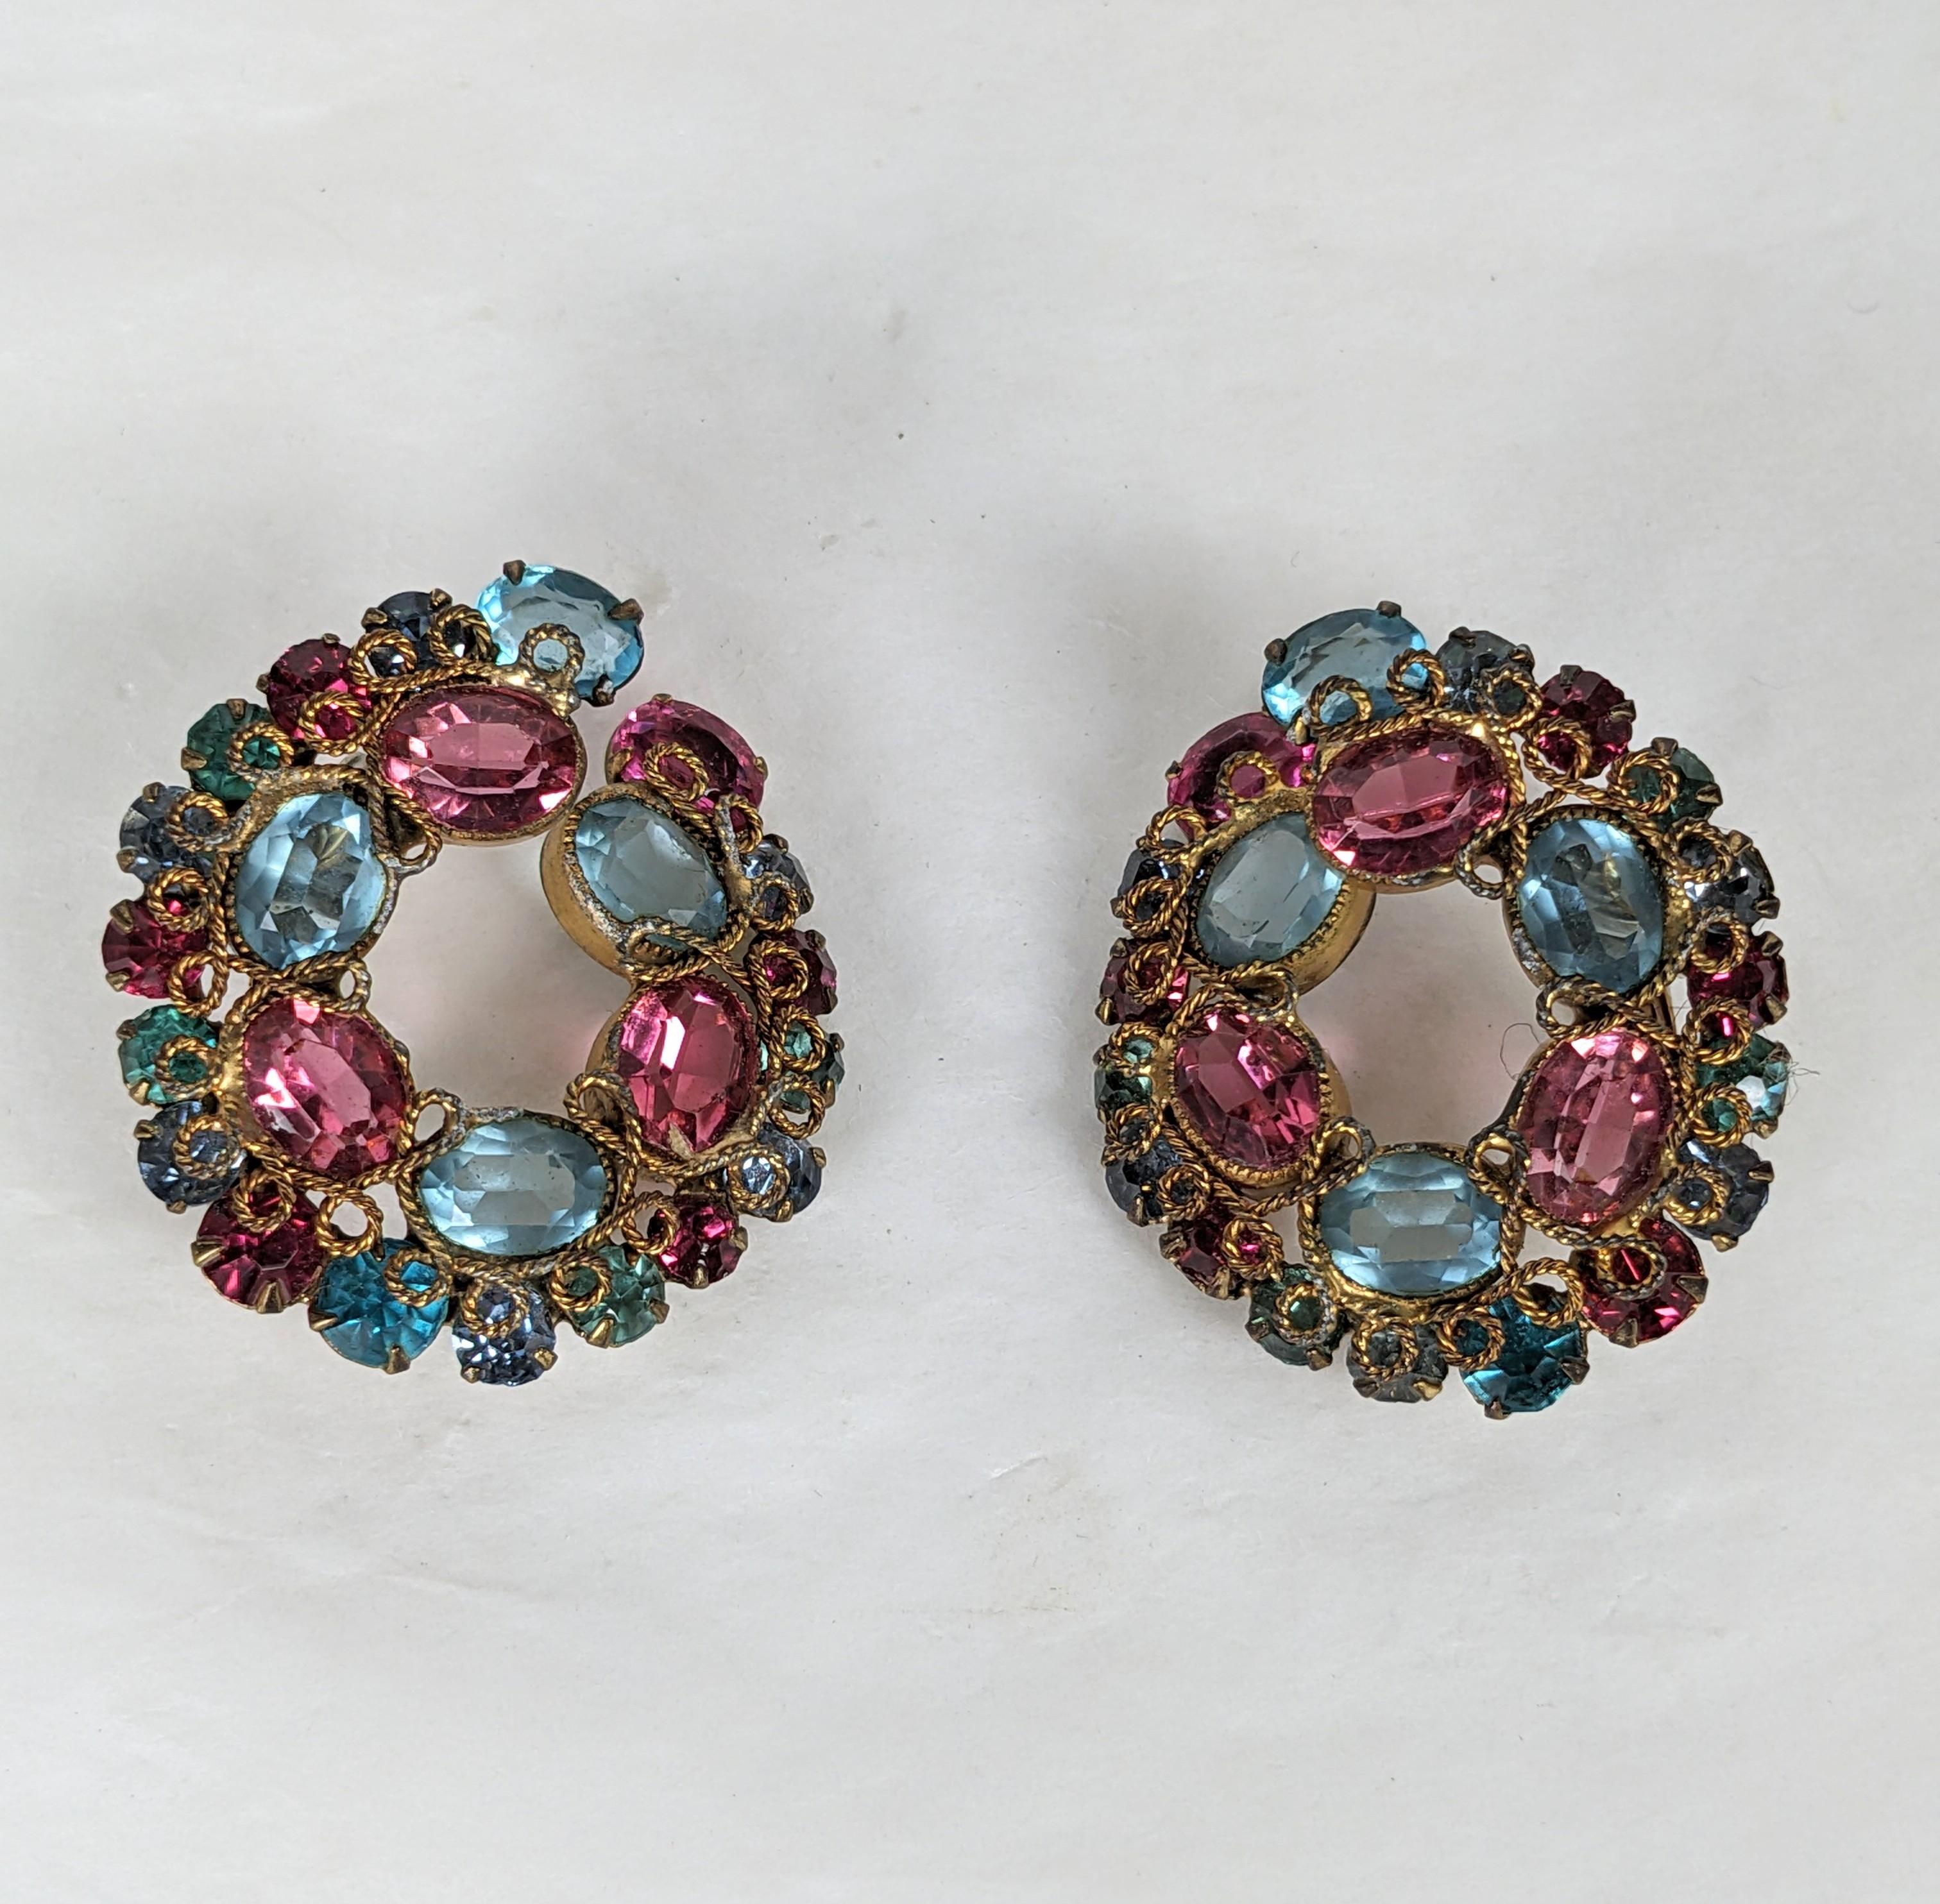 Robert Pastel Crystal Earrings, handgefertigt aus rosa und aquafarbenen Kristallen mit der charakteristischen Drahtverzierung in Schleifen. Clip zurück Armaturen. 1,25